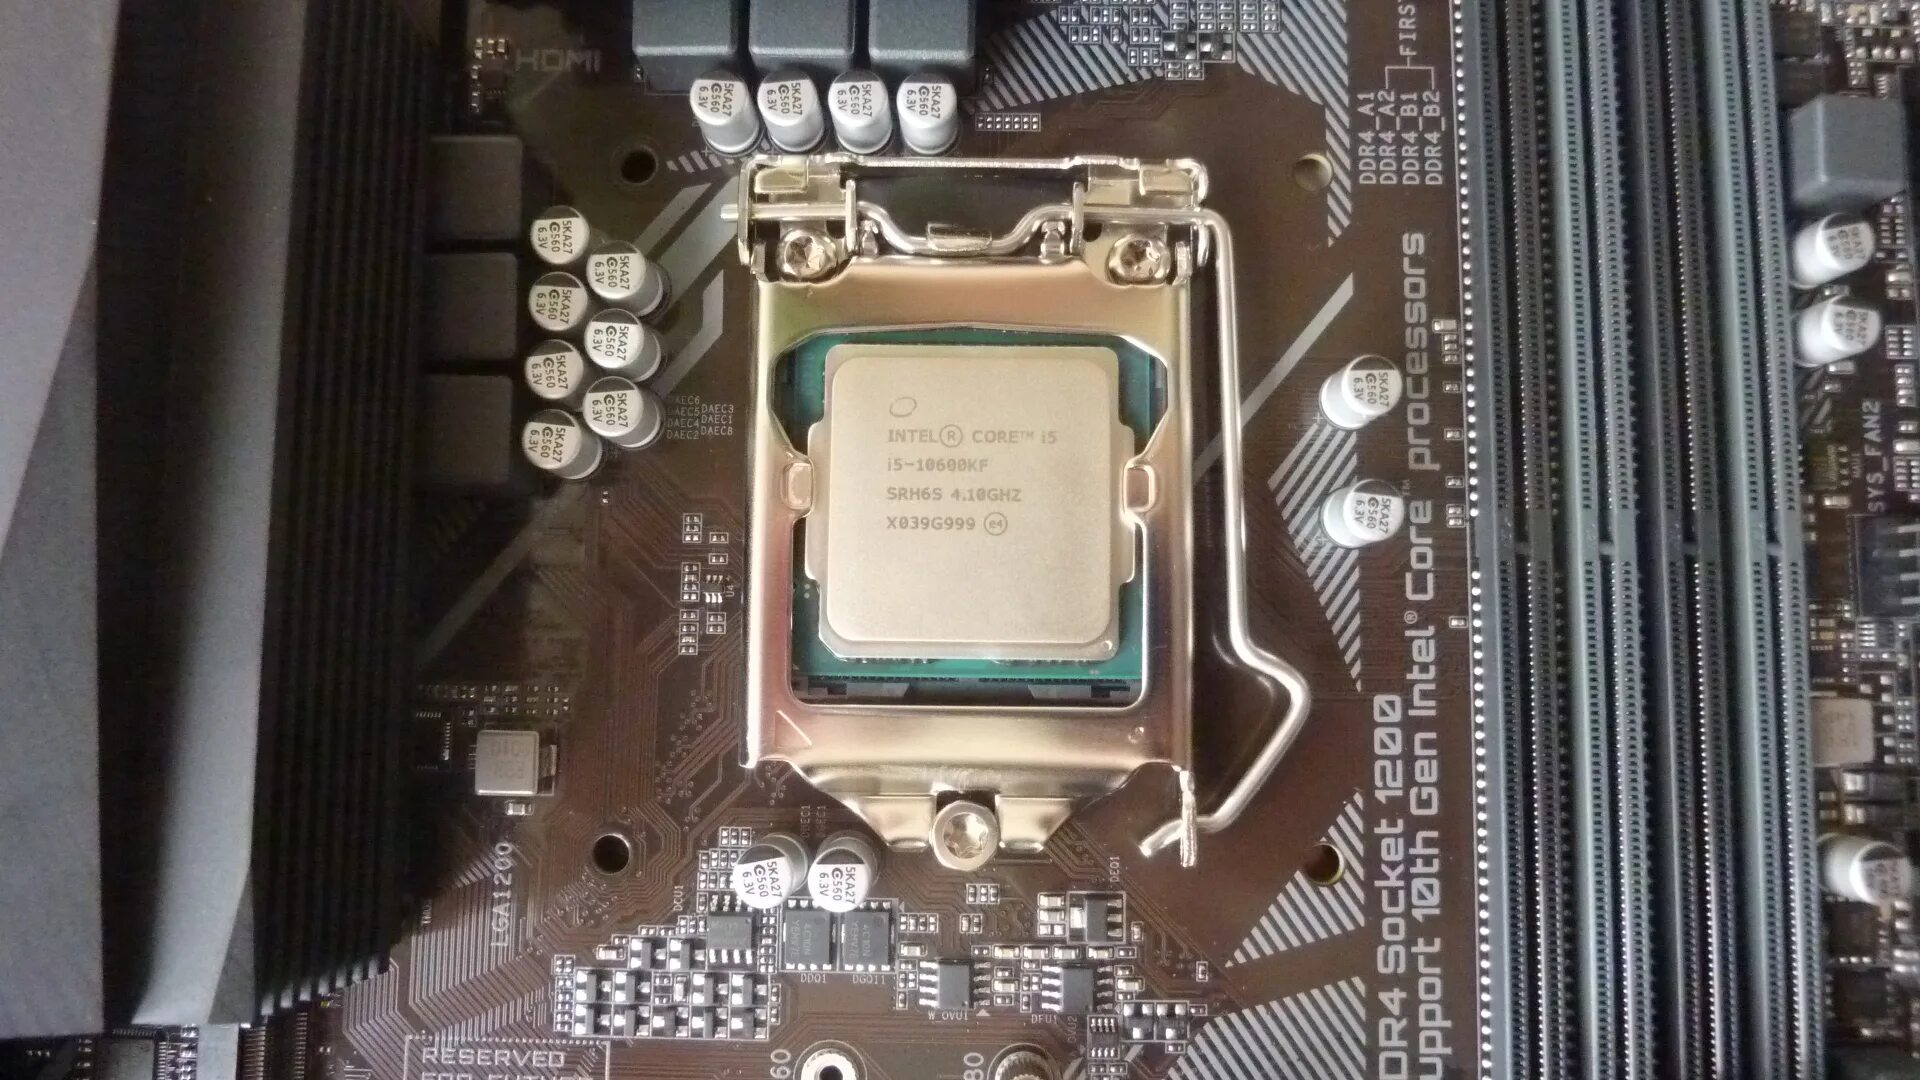 12600f. Процессор Intel Core i5 10600kf. Intel Core i5-10600kf (Box). Процессор Intel Core i5-10600kf OEM. Core i5 10600kf, LGA 1200, Box.